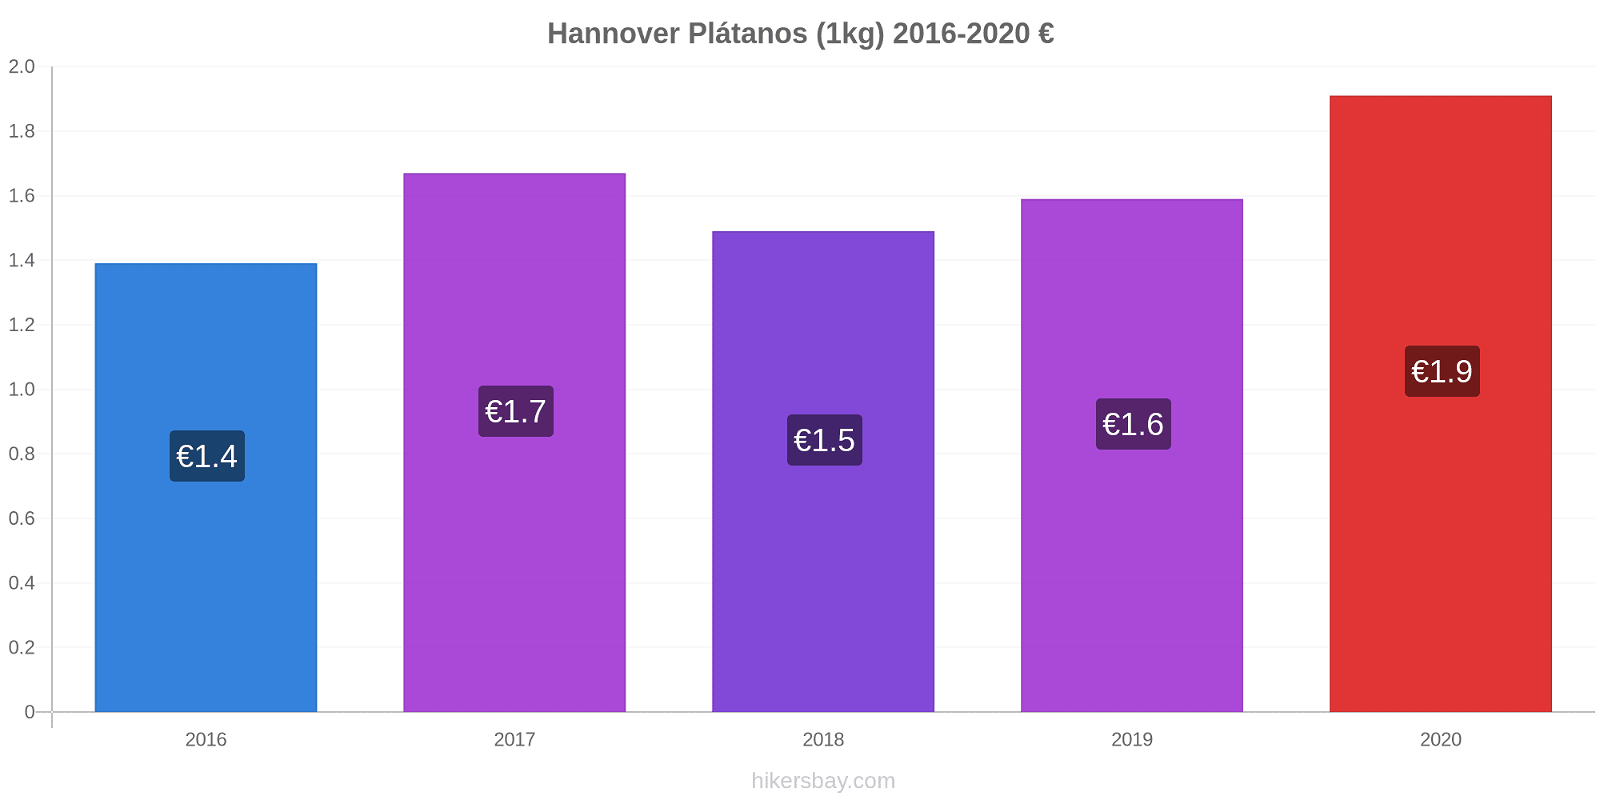 Hannover cambios de precios Plátano (1kg) hikersbay.com